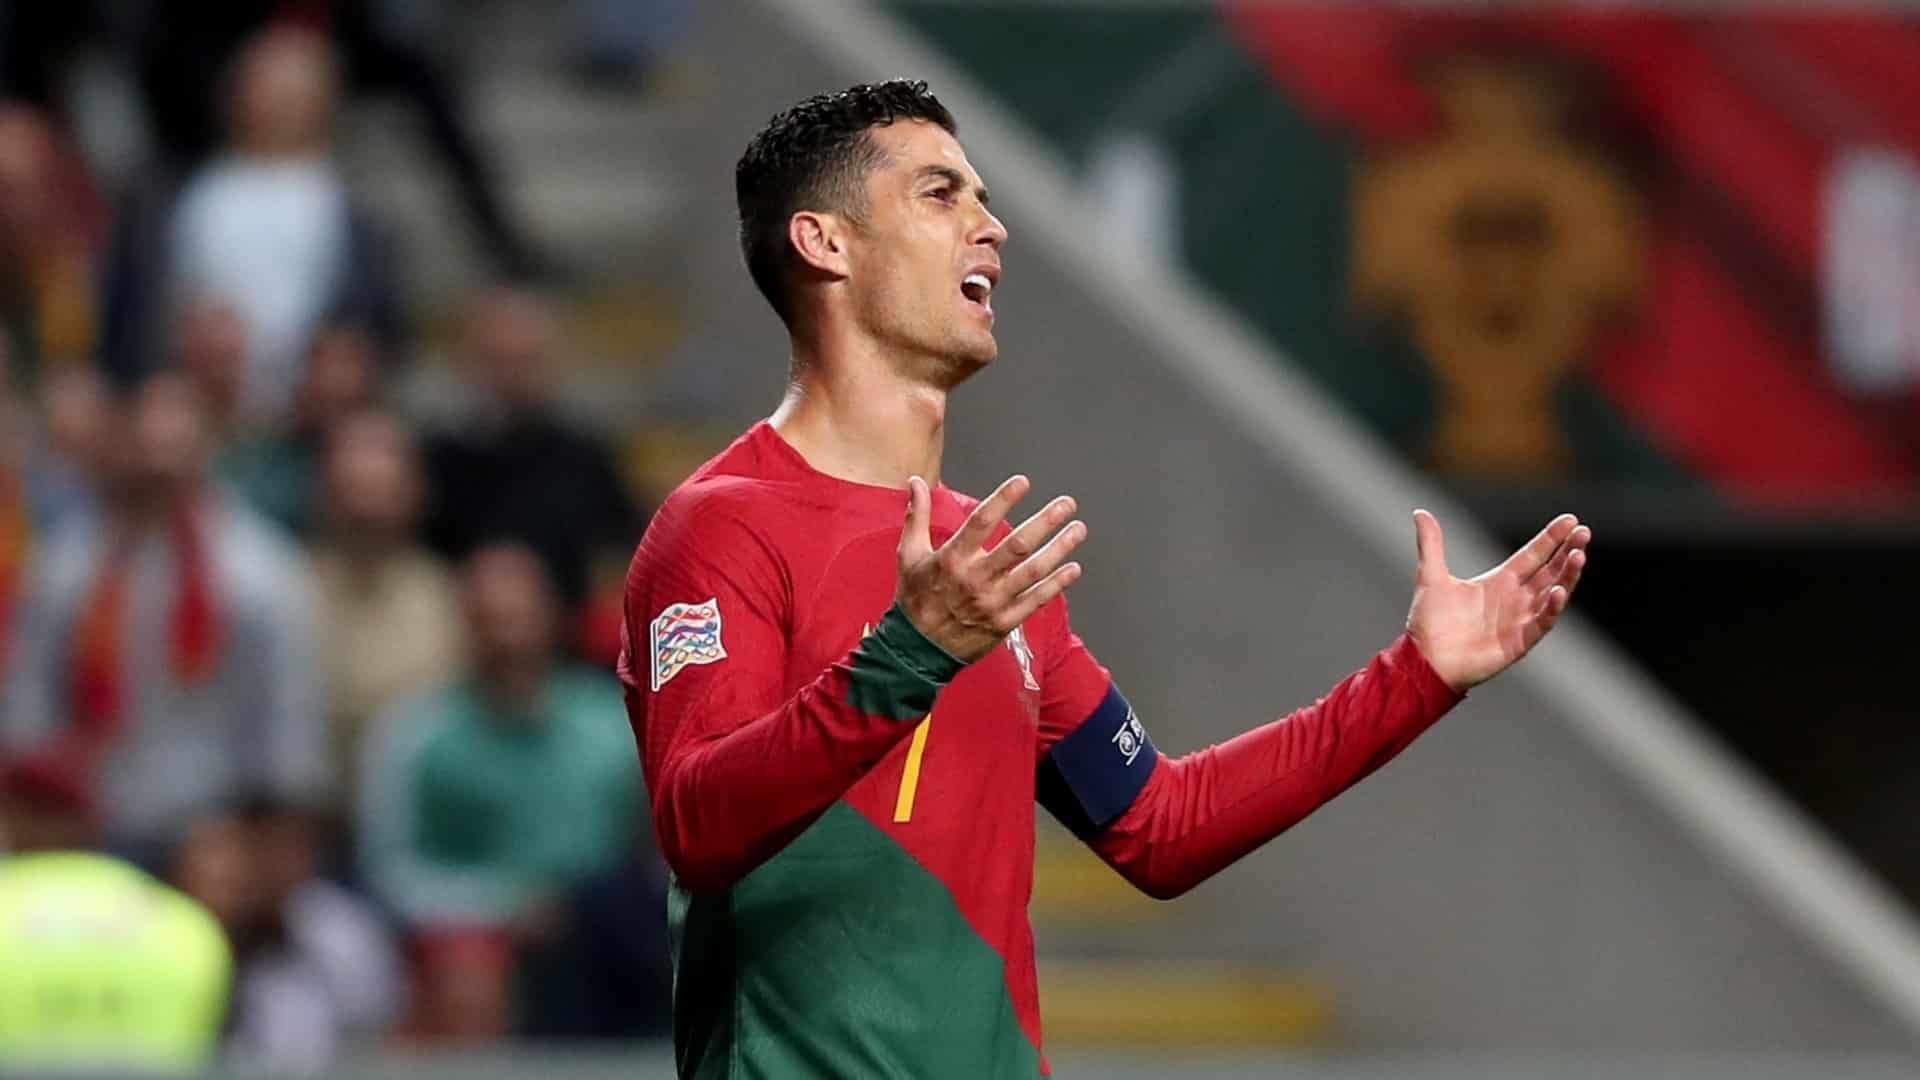 رونالدو يغيب عن مواجهة السويد الودية: استبعاد سبعة لاعبين آخرين من تشكيلة المنتخب البرتغالي